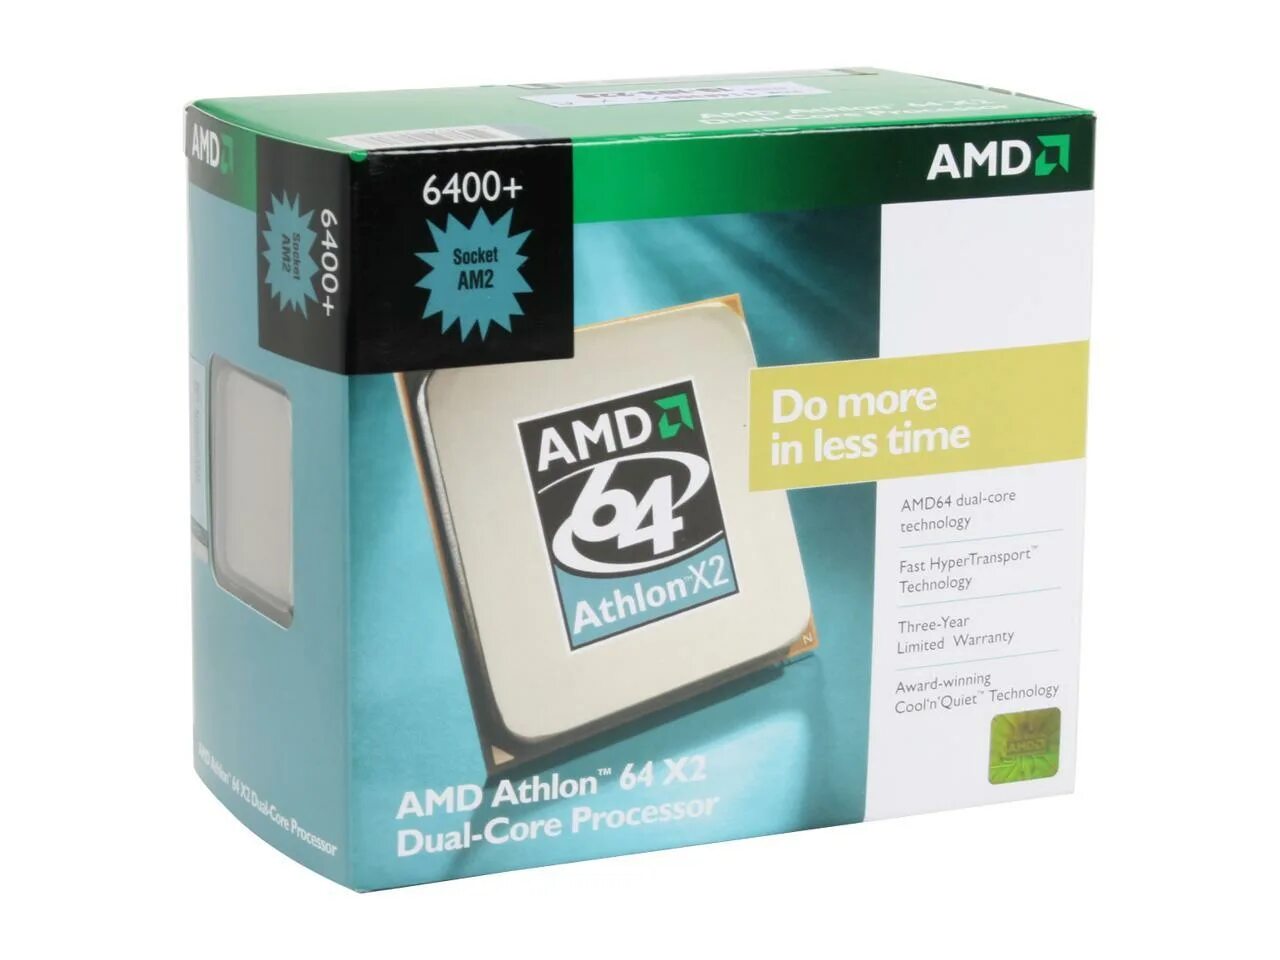 AMD Athlon 64 x2 6400+. AMD Athlon x2 Dual Core. AMD Athlon 64 x2 сокет. AMD Athlon 64 x2 Dual Core 6400+.